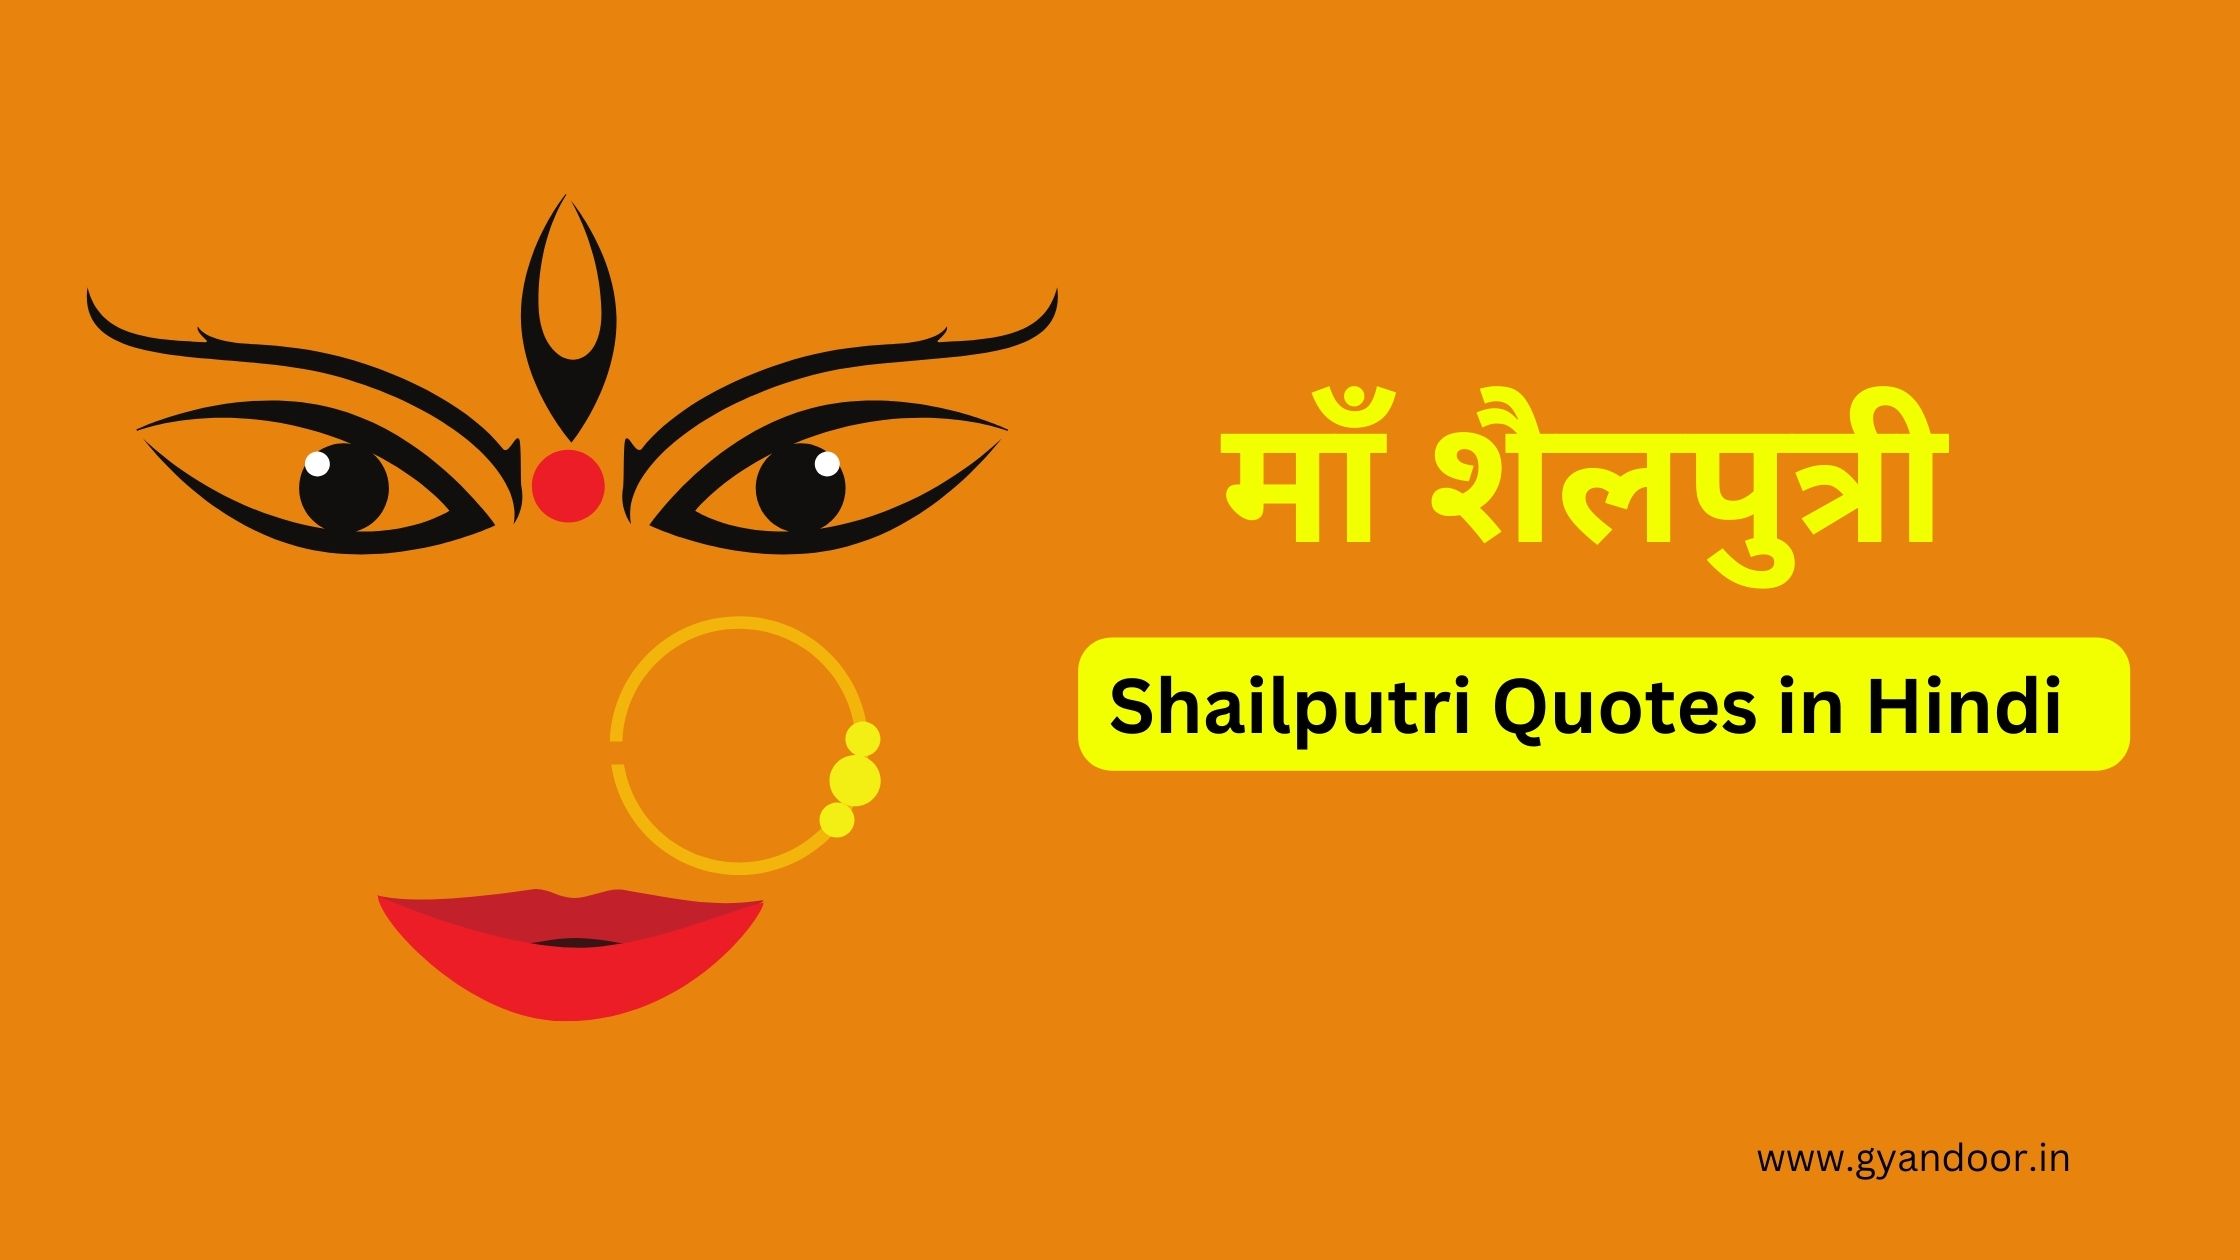 Shailputri Quotes in Hindi